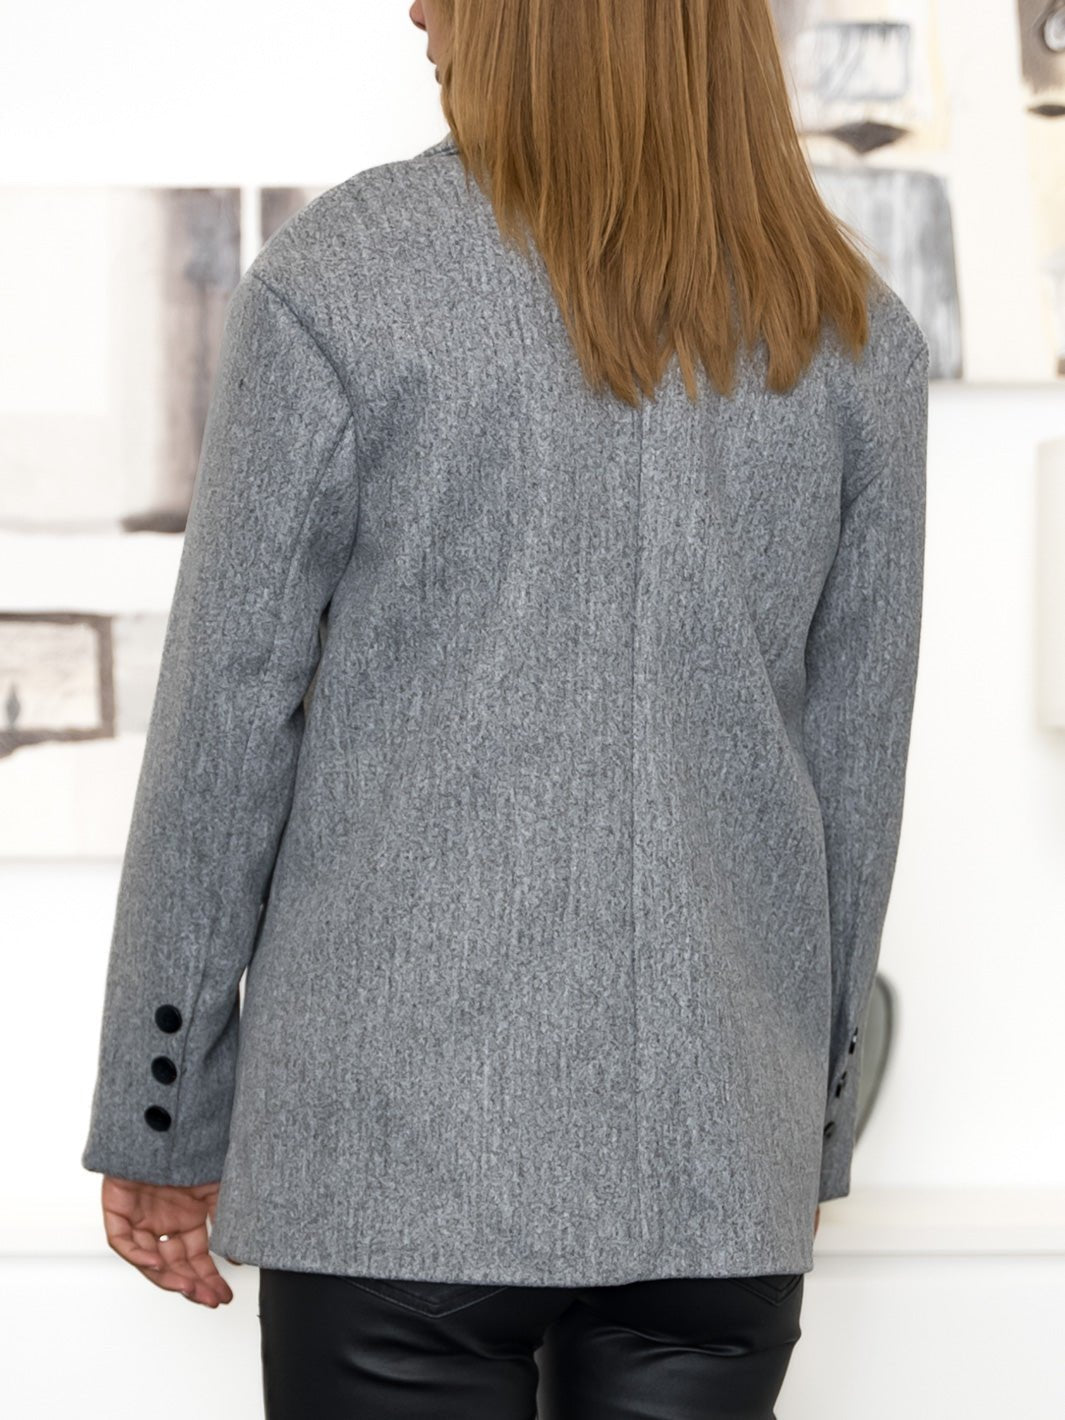 Velina jacket grey - Online-Mode